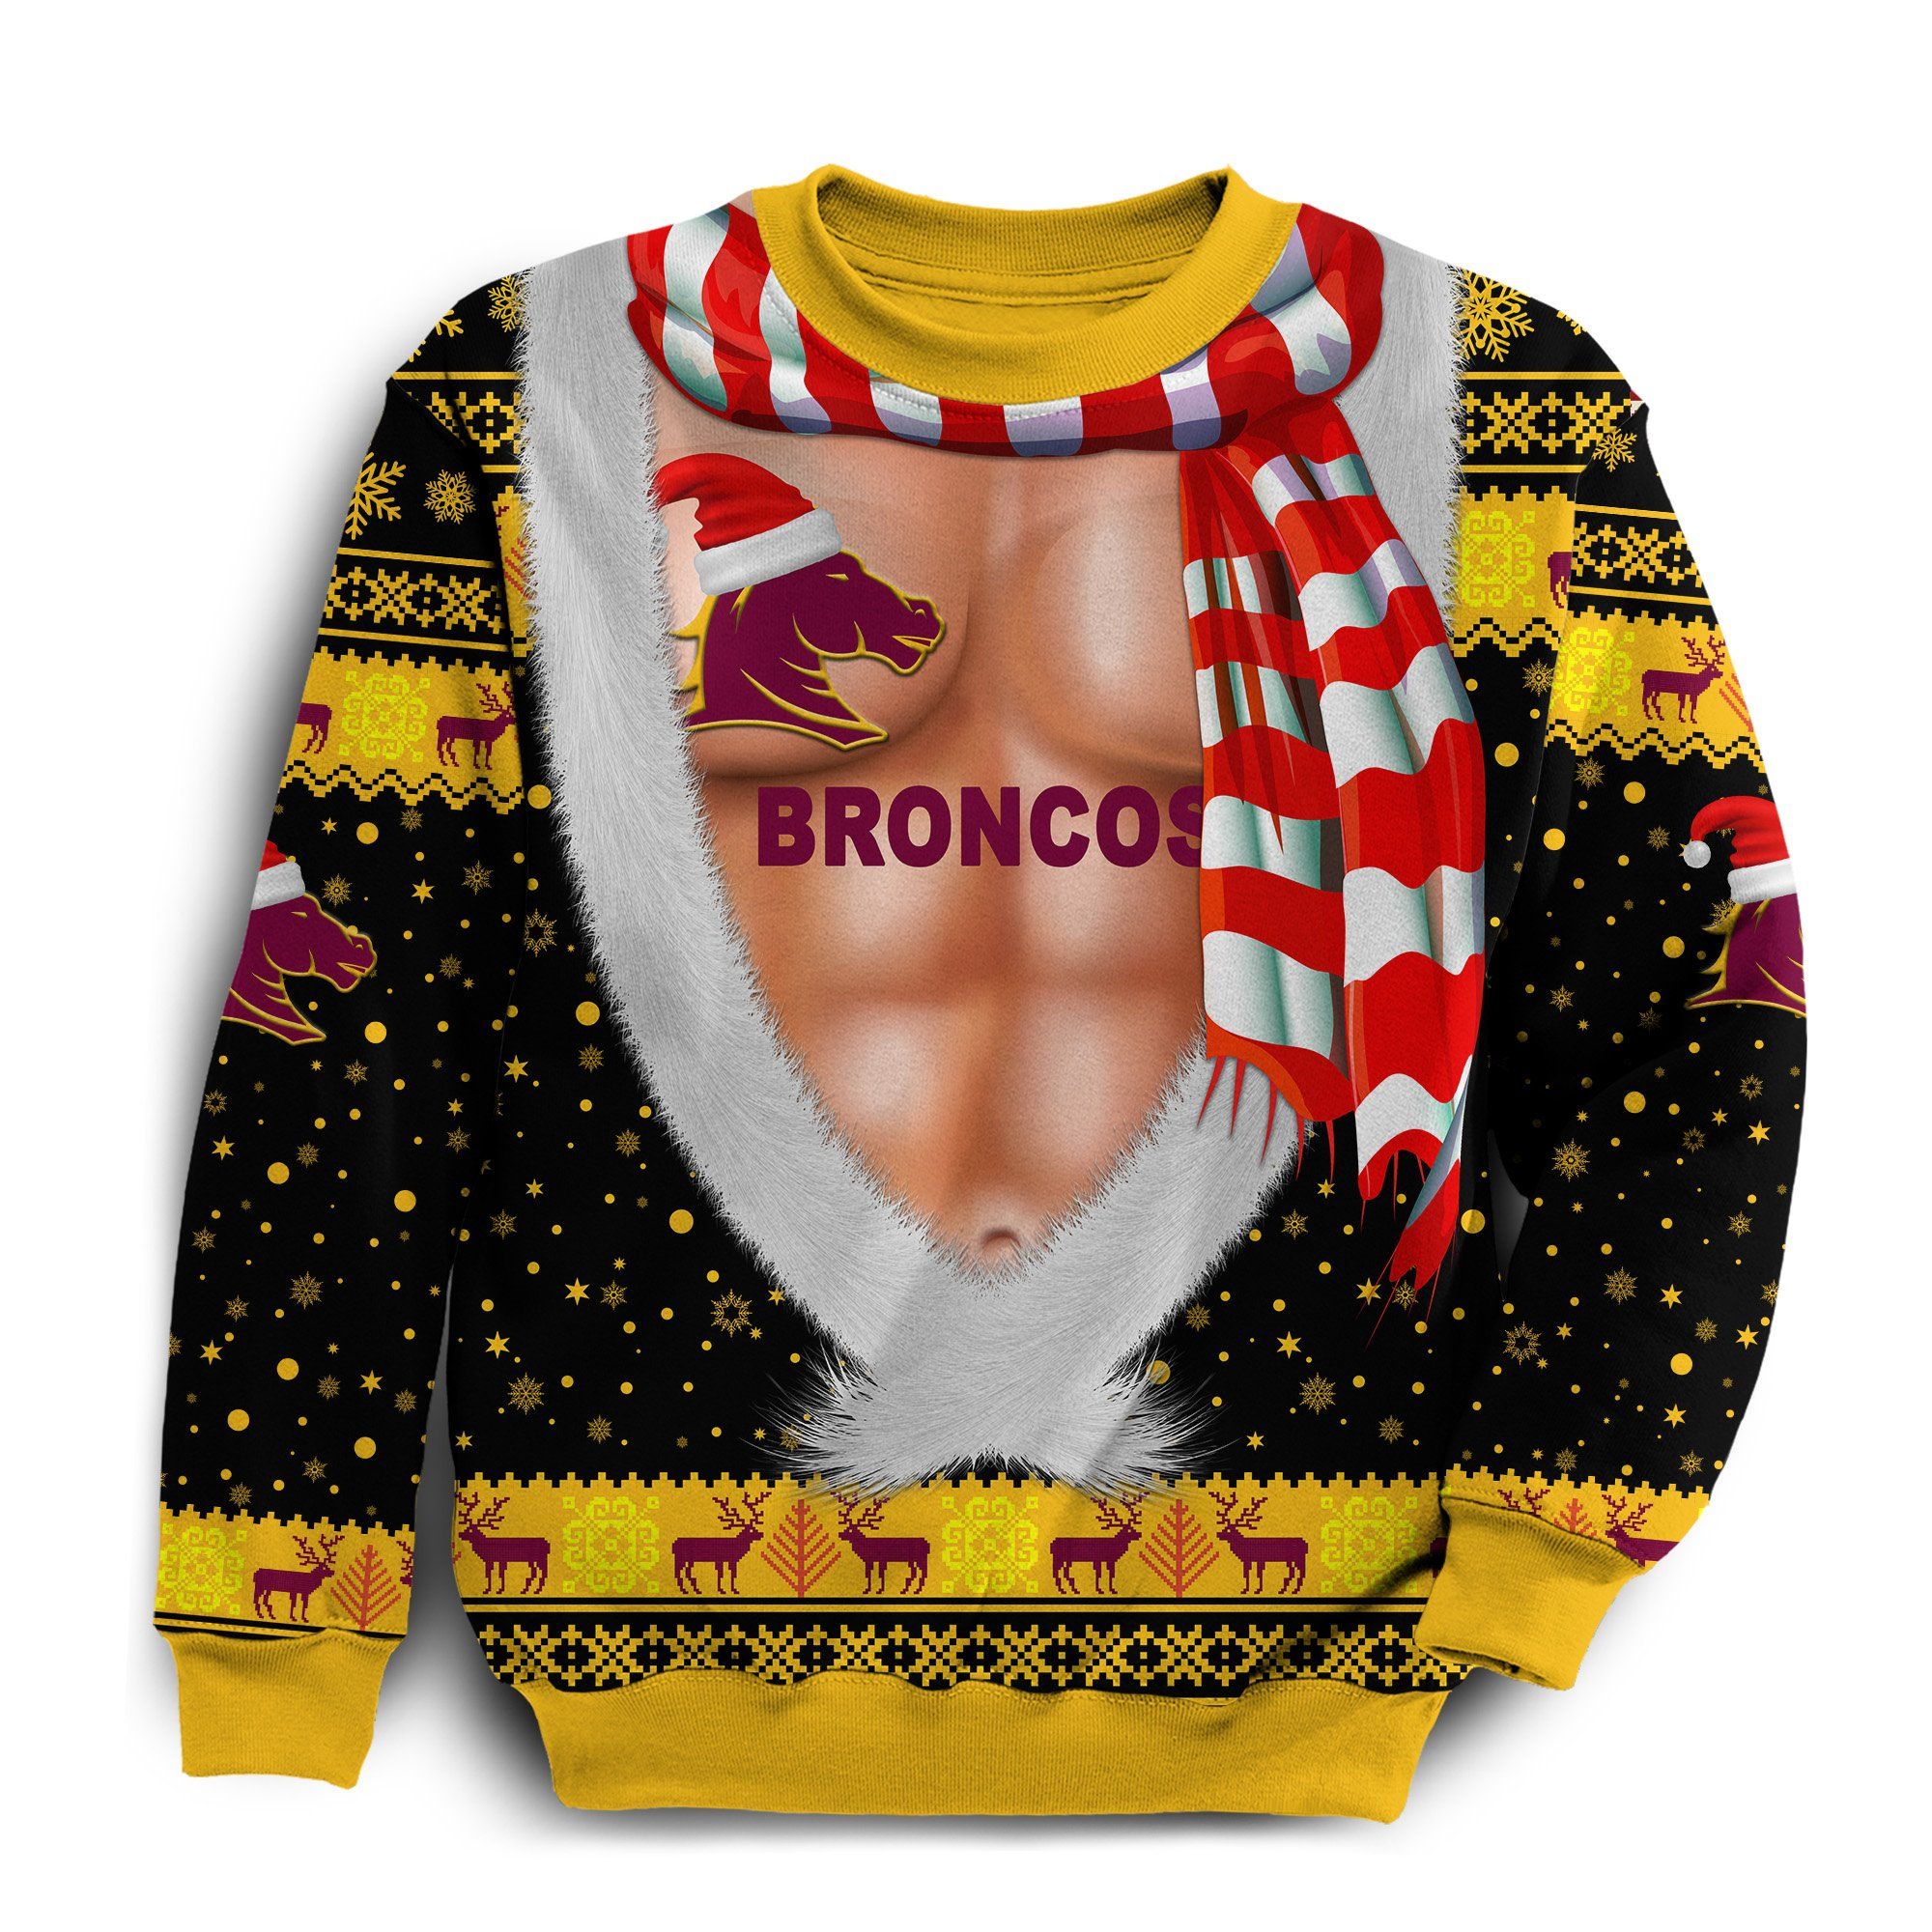 Brisbane Sweatshirt Broncos Christmas Nice Abs - Black K8